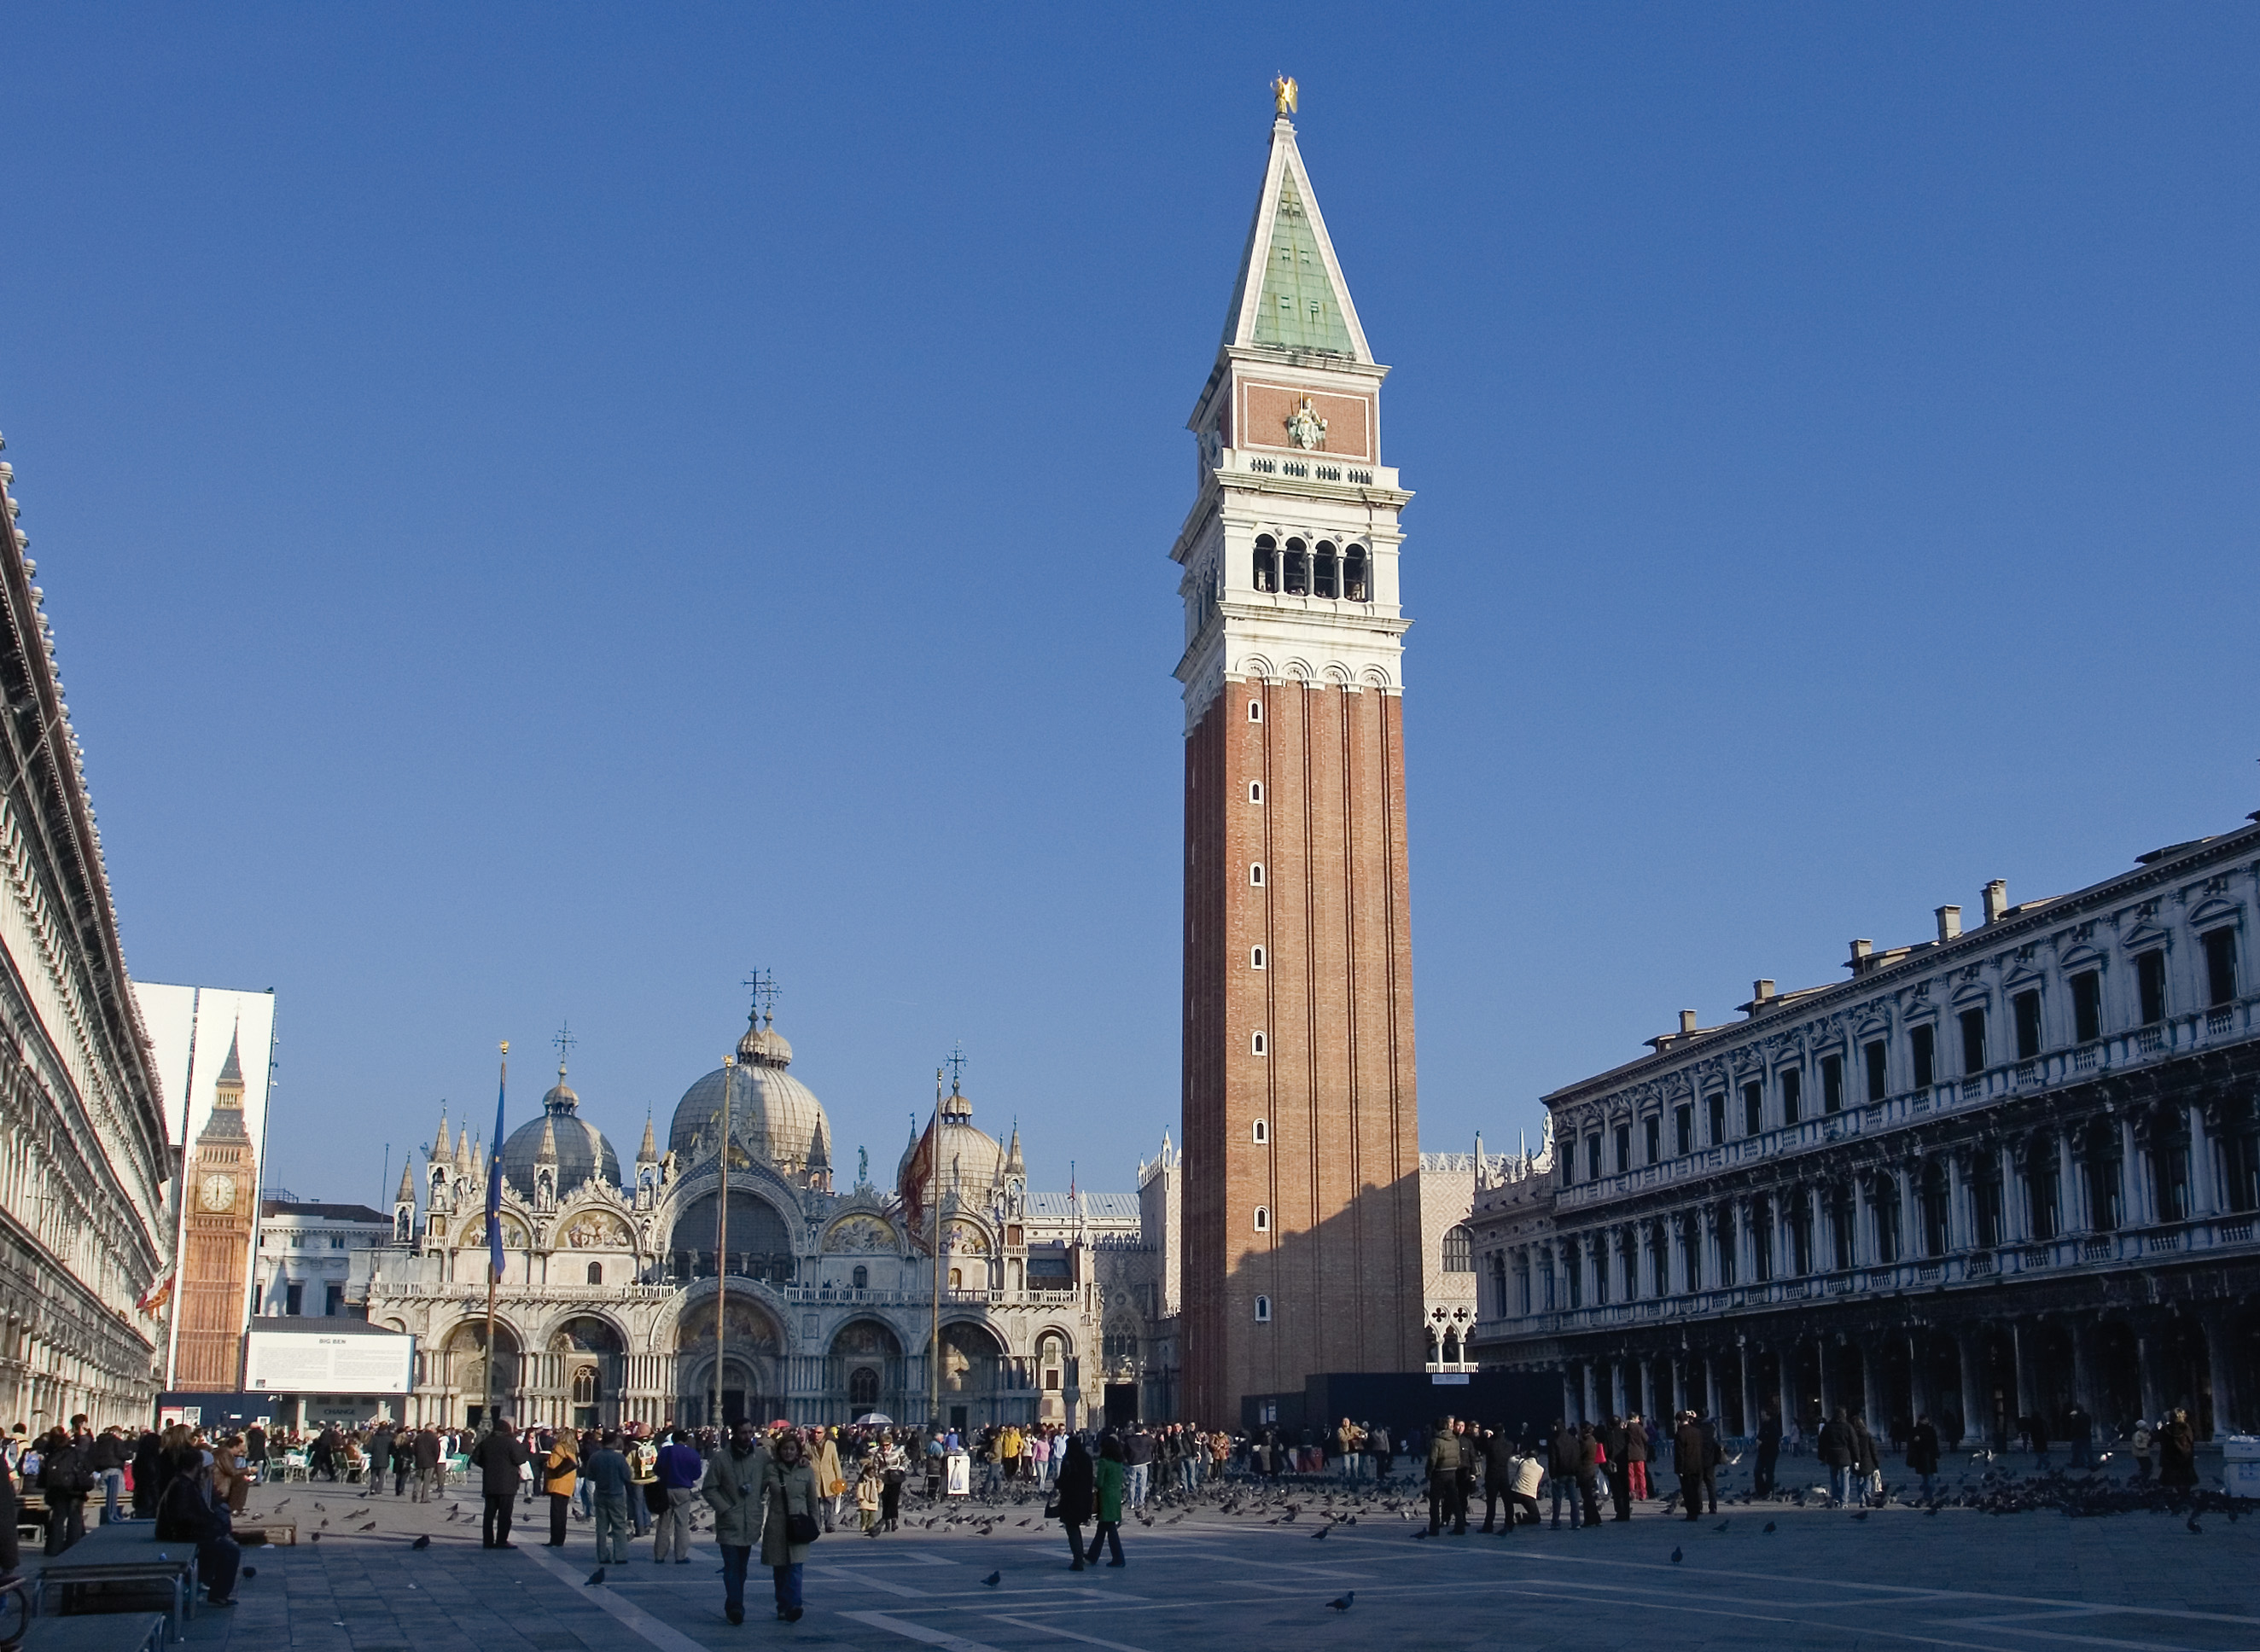 Tháp chuông Thánh Mark - St. Marks Bell Tower - Venice - Ý